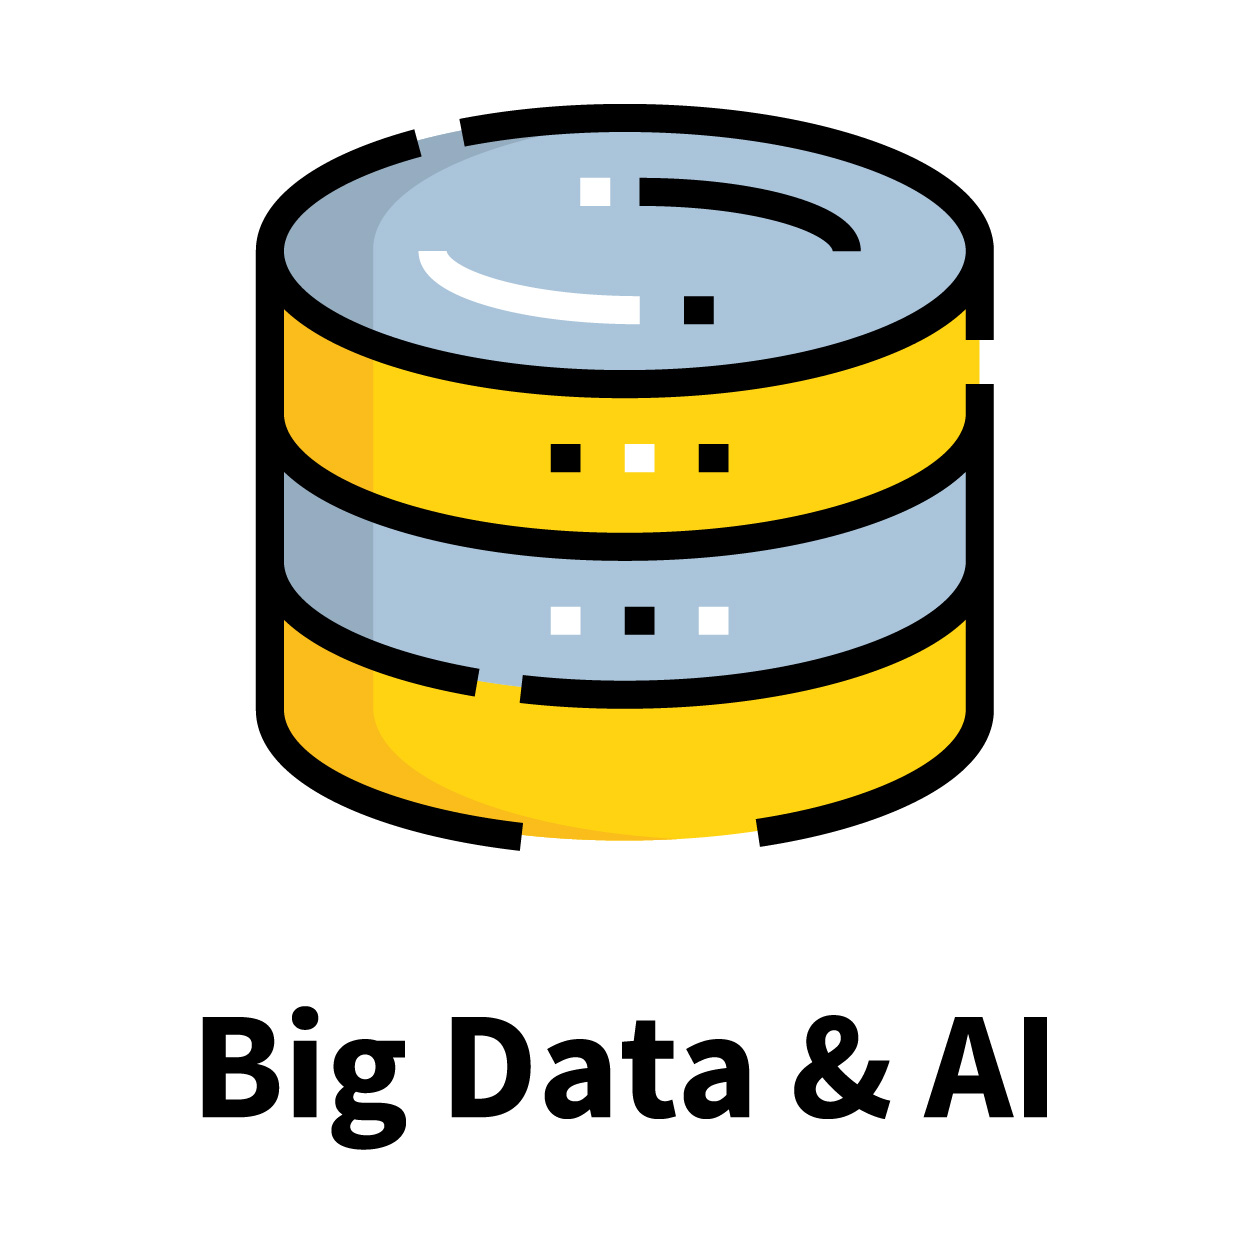 Big Data & AI